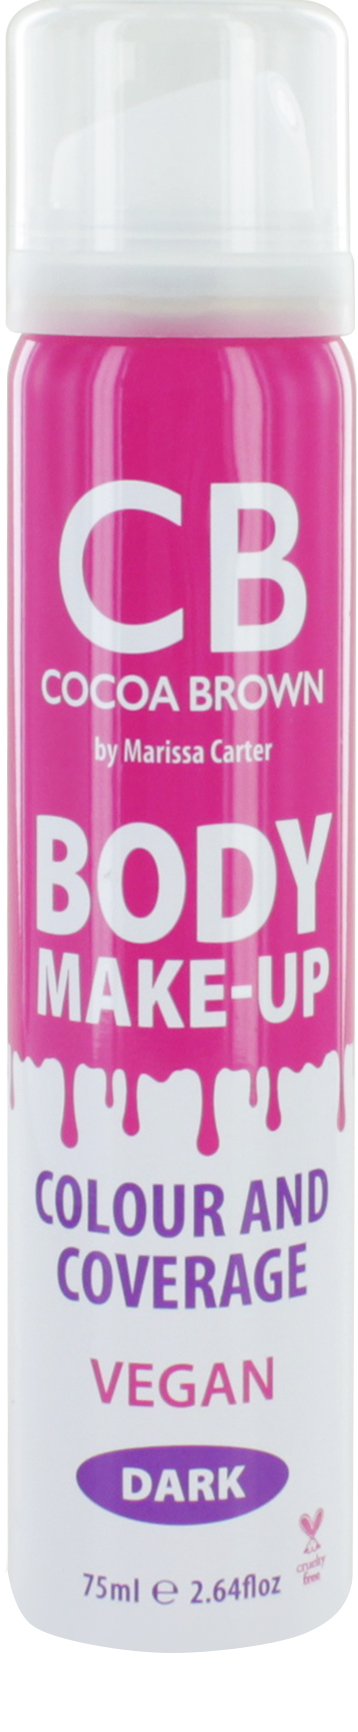 Cocoa Brown Body Make-up Dark Colour & Coverage 75 ml